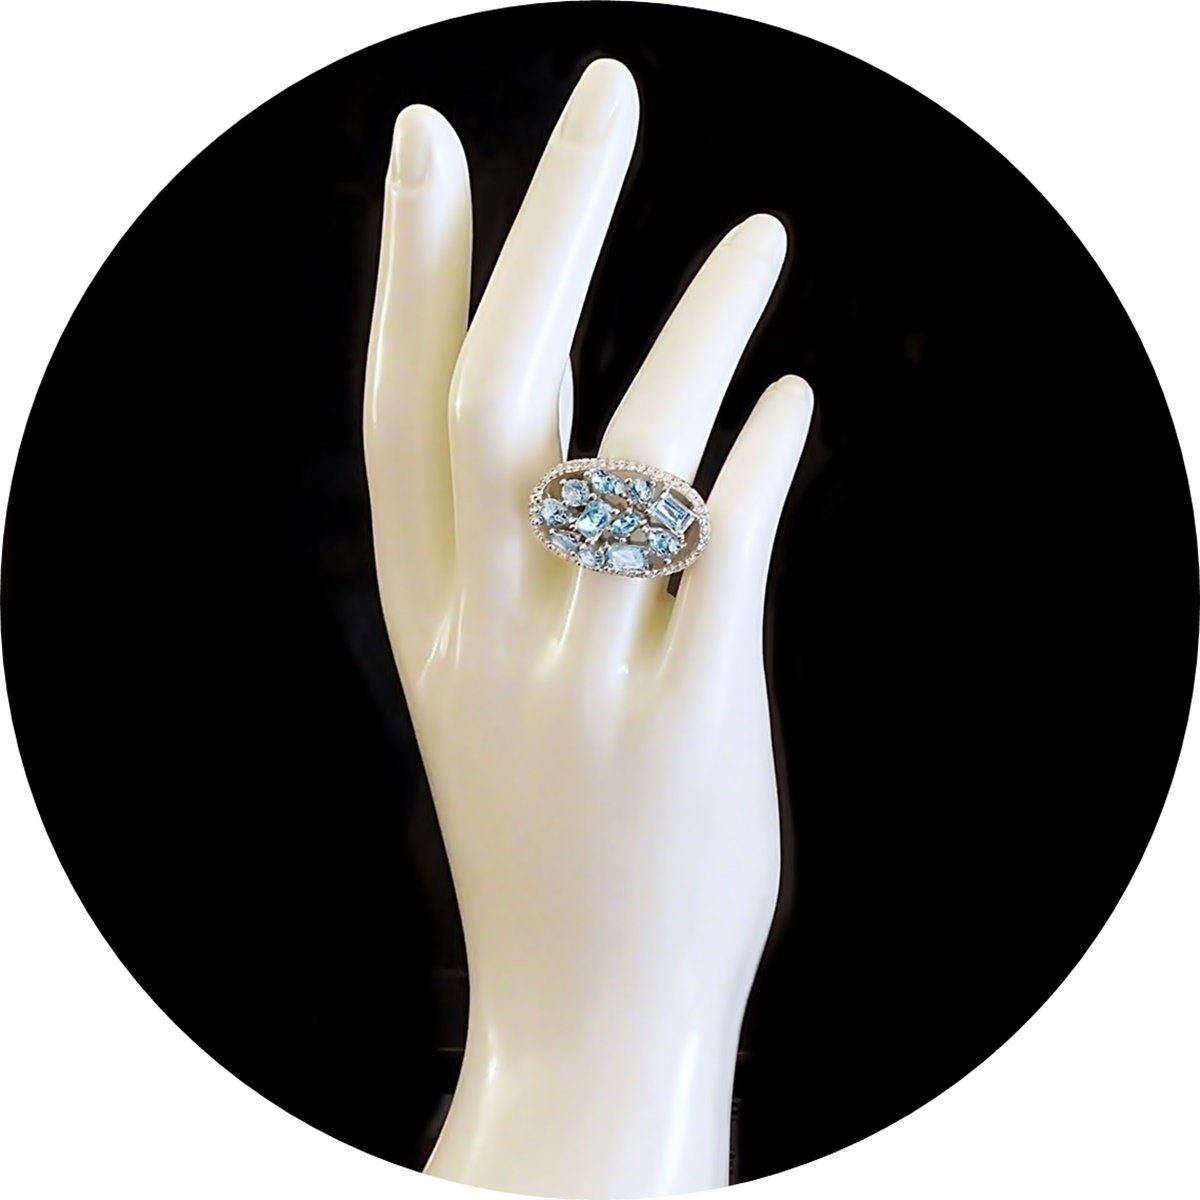 Damen Schmuck Goldene Hufeisen Silberring Blautopas Ring aus 925 Sterlingsilber Damen echte Edelsteine Fingerring, Massiv